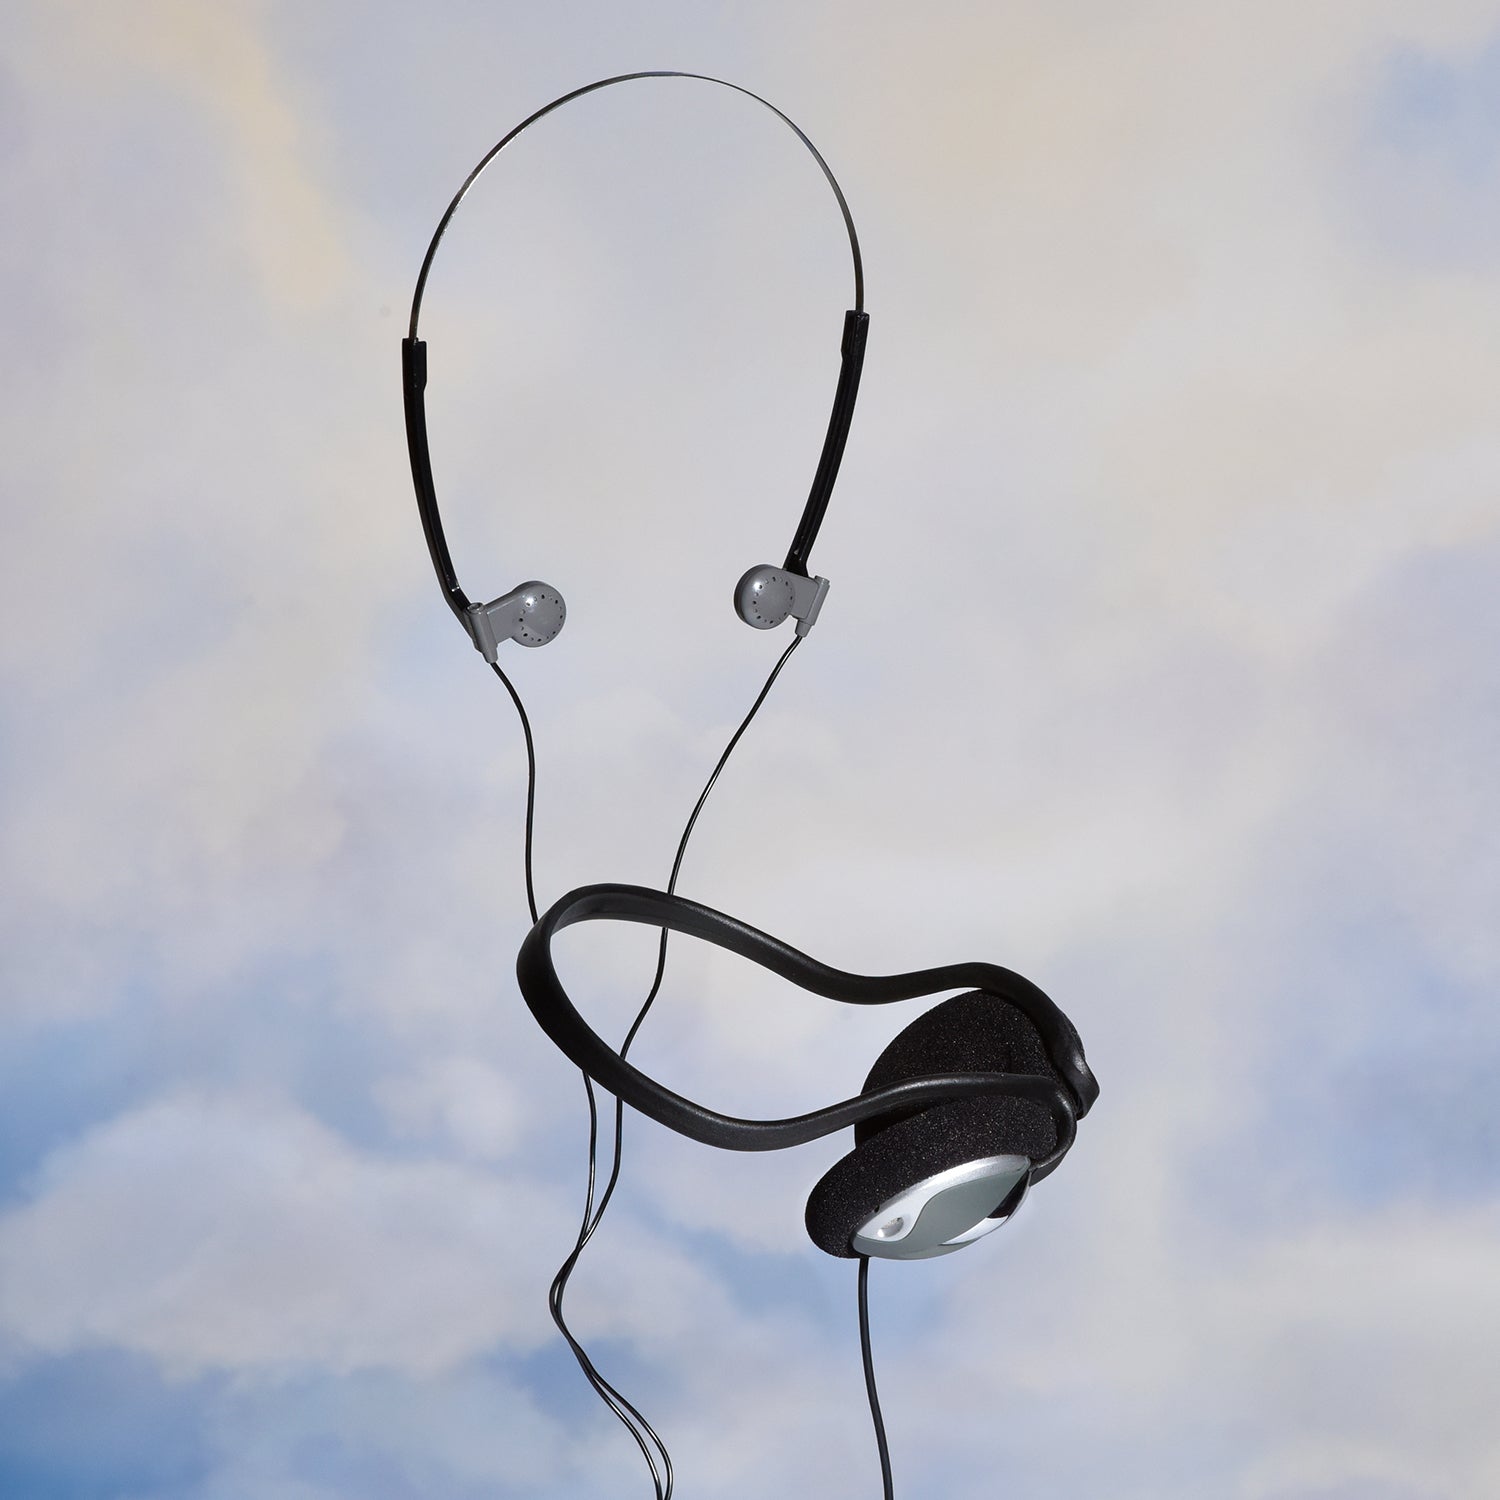 vintage headphones suspended in the sky